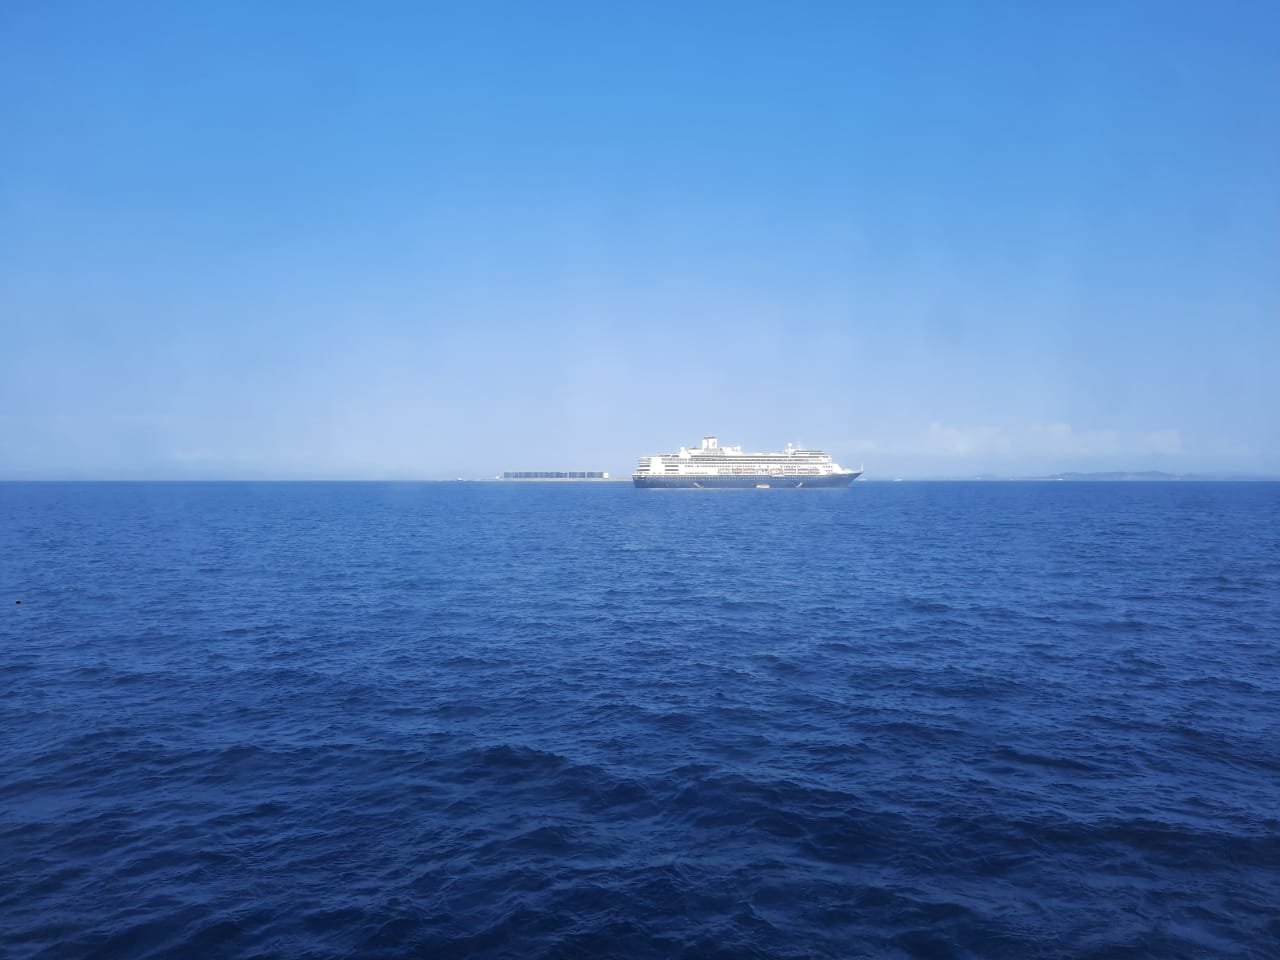     Les Martiniquais bloqués à bord du Zaandam attendent d'être transférés vers un autre bateau

